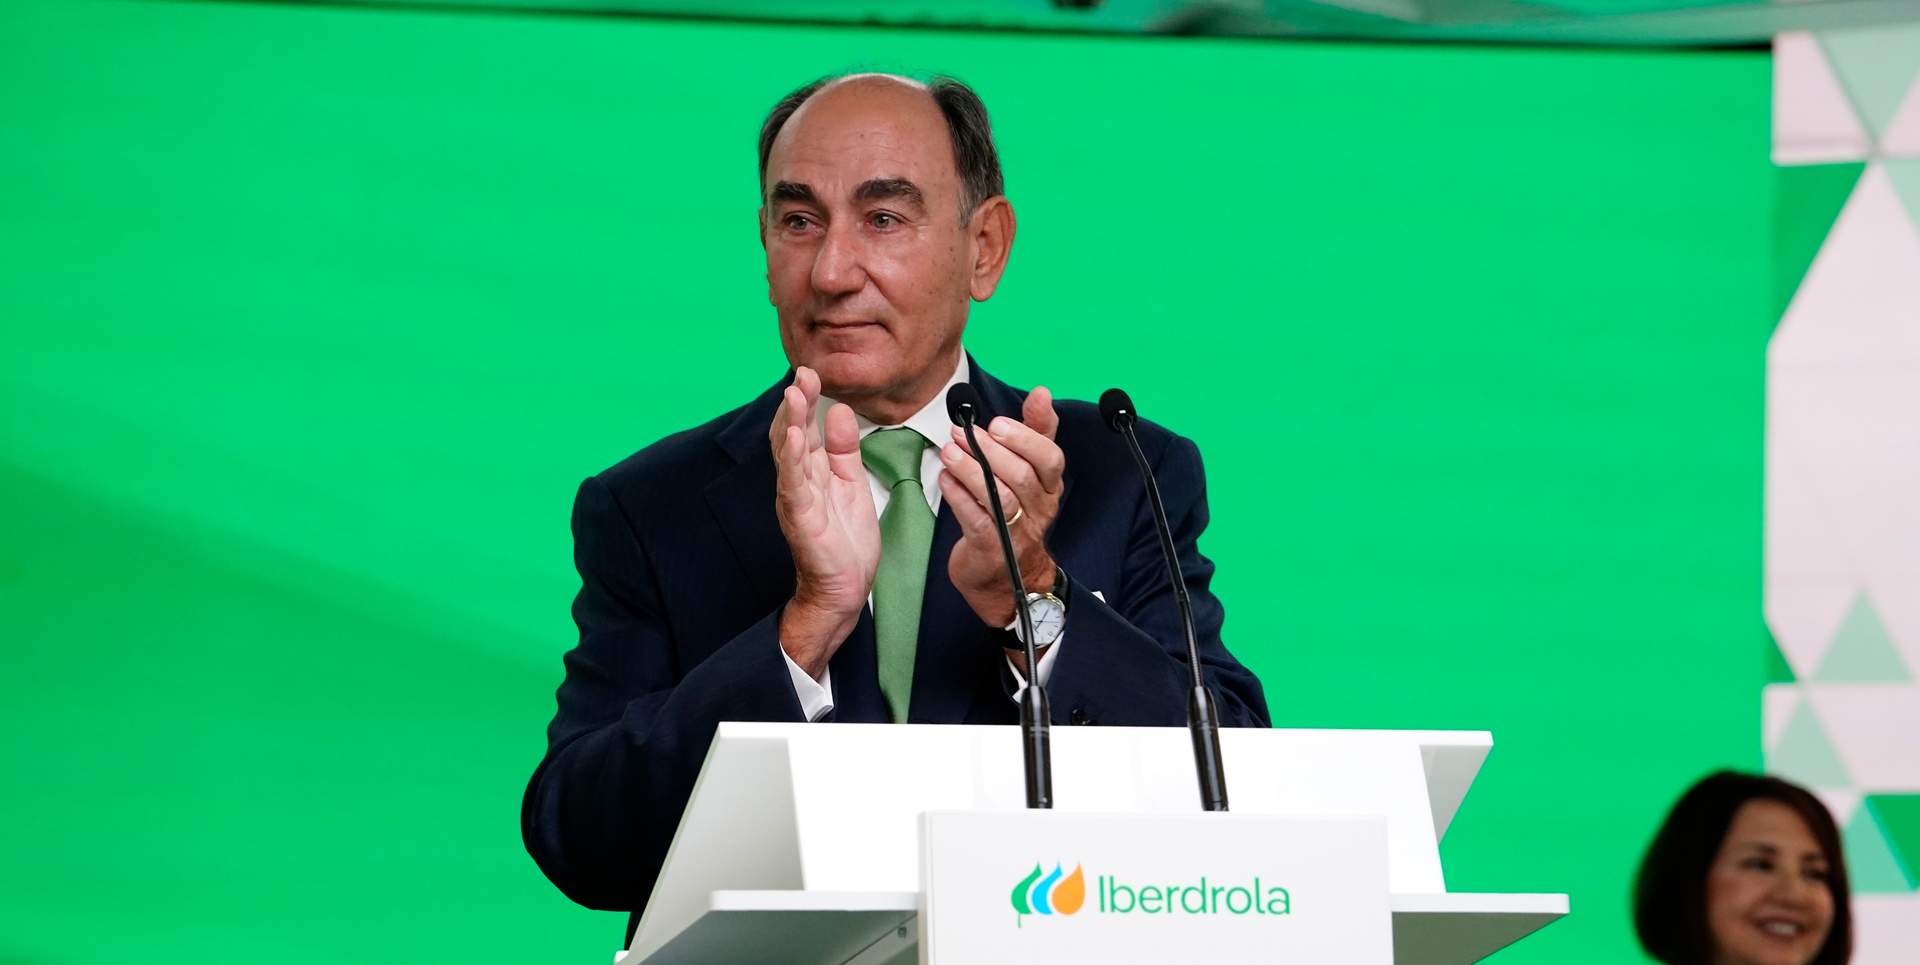 La junta de accionistas de Iberdrola respalda la gestión de Galán